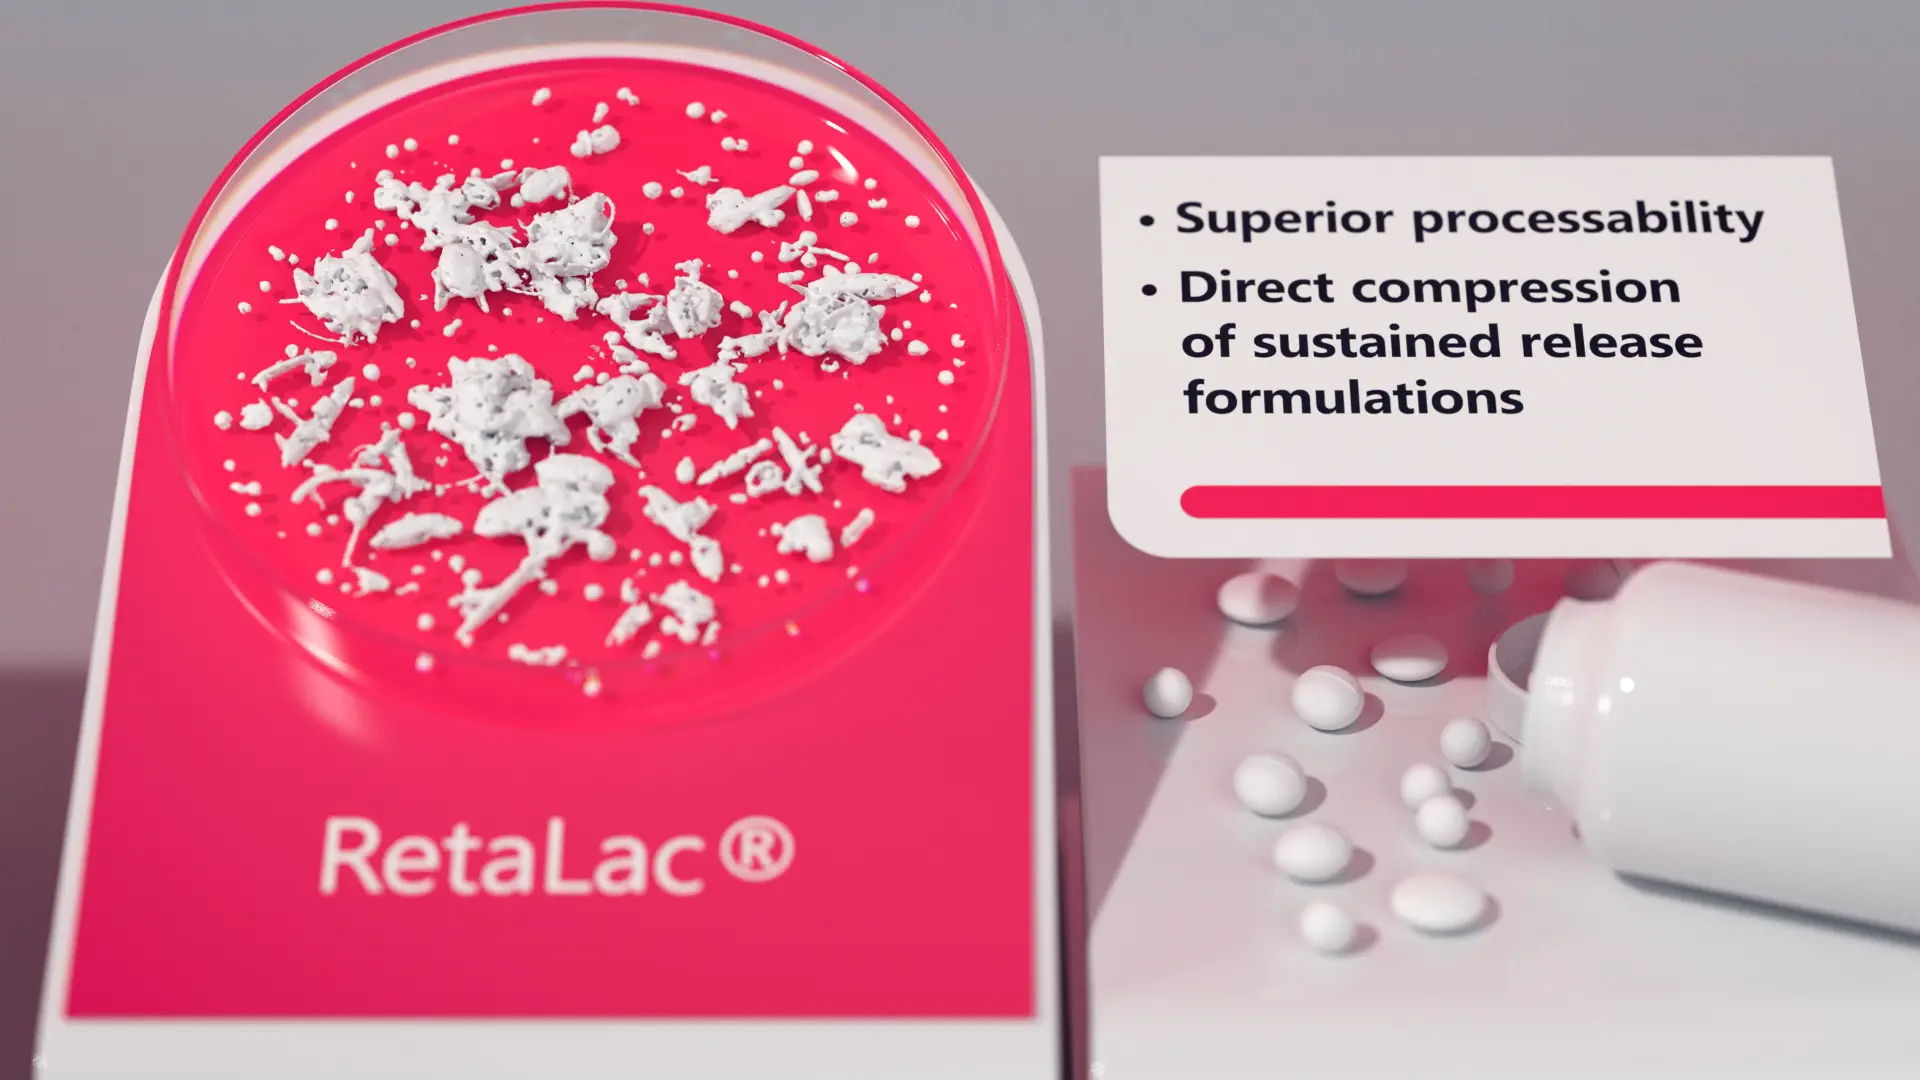 RetaLac-Produktbild zeigt Pulver und Tabletten, betont überlegene Verarbeitbarkeit und direkte Kompression von Retardformulierungen.